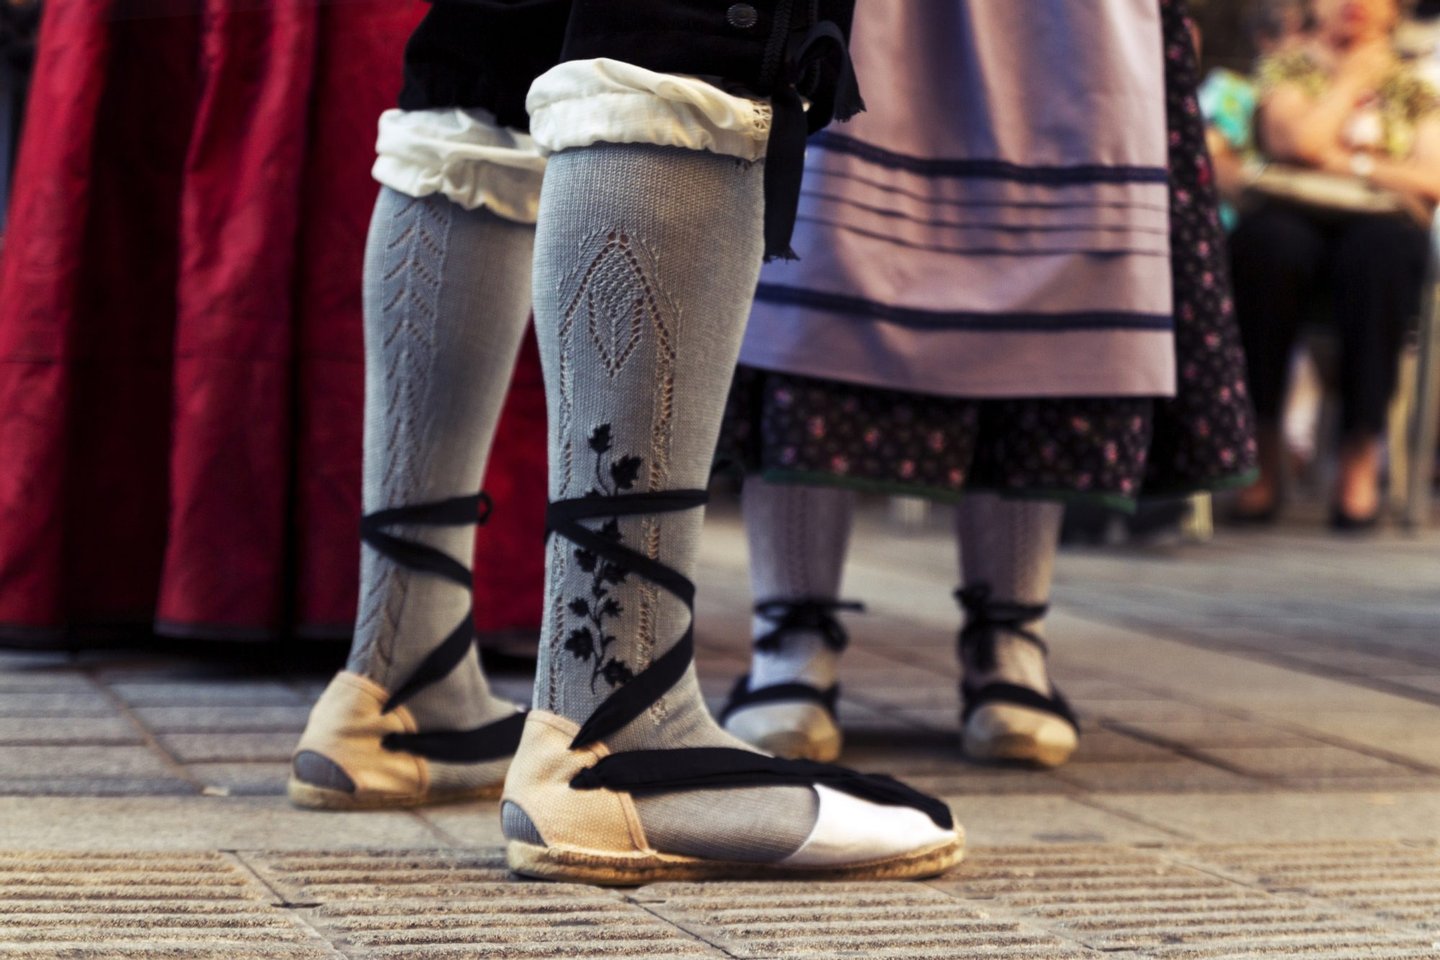 Traditional Dancing, Sock, Skirt, Dancing, Cultures, Aragon, Spain, Shoe, 